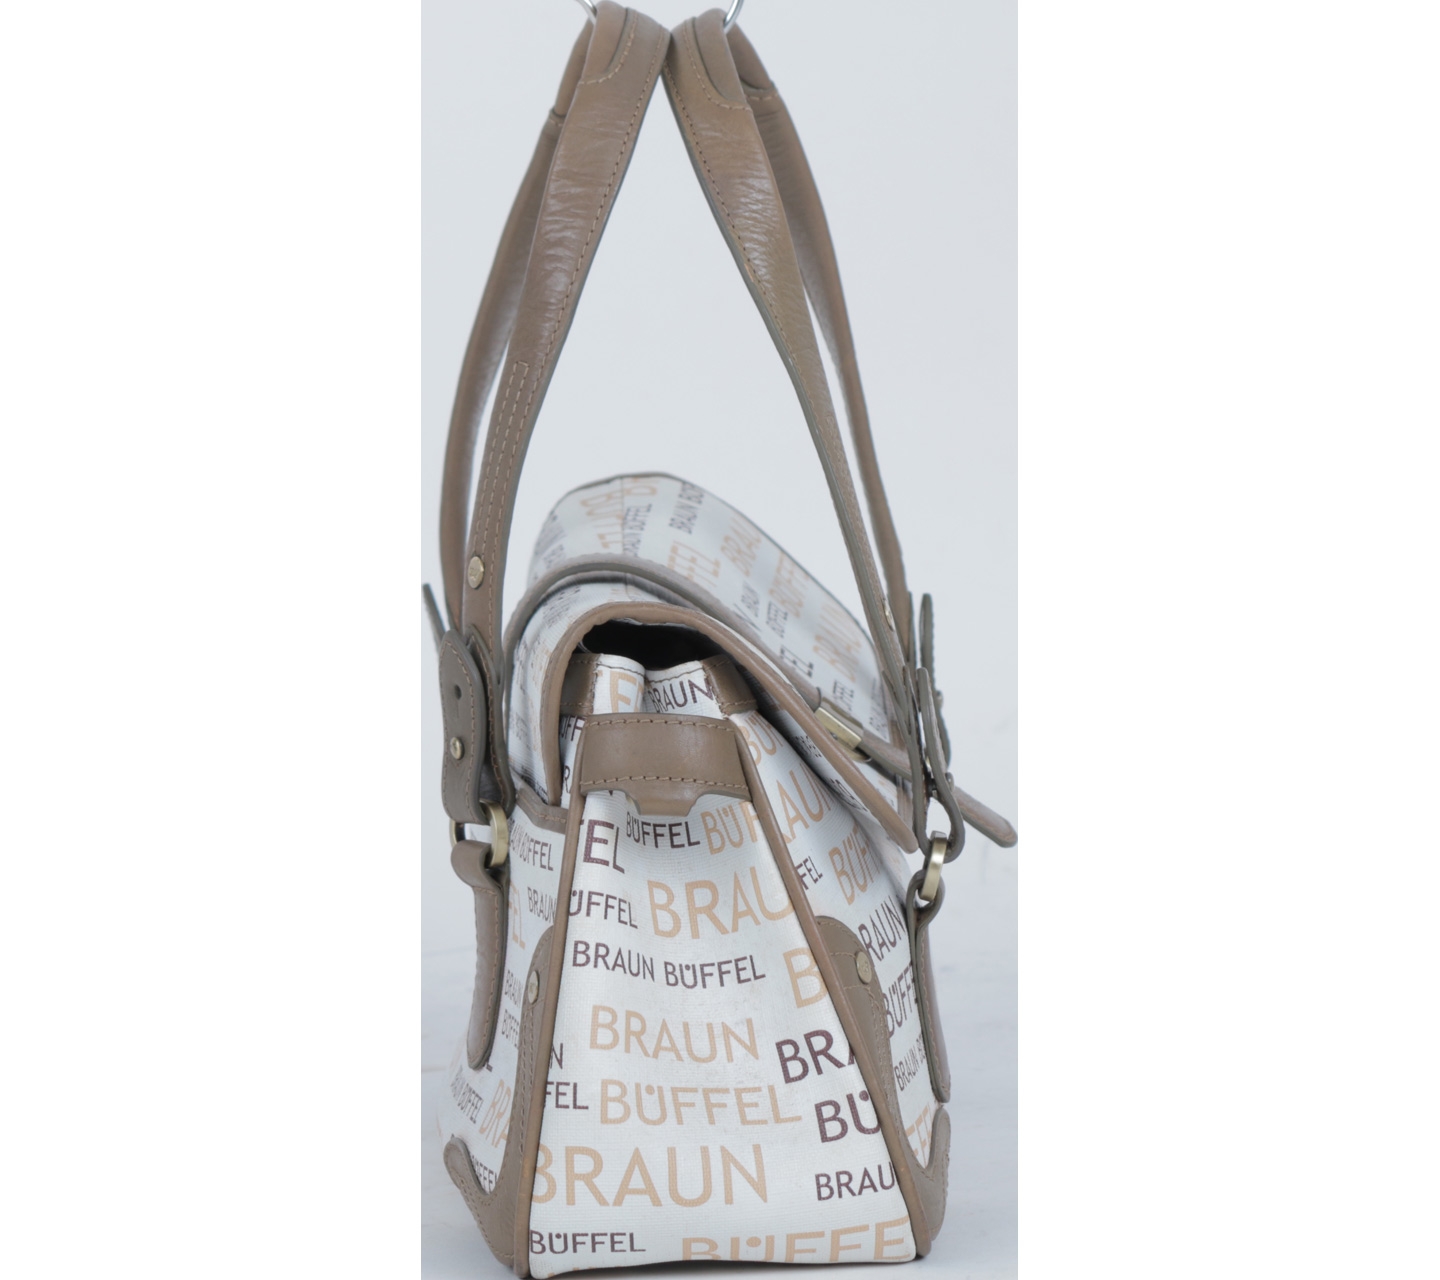 Braun Buffle White And Brown Handbag